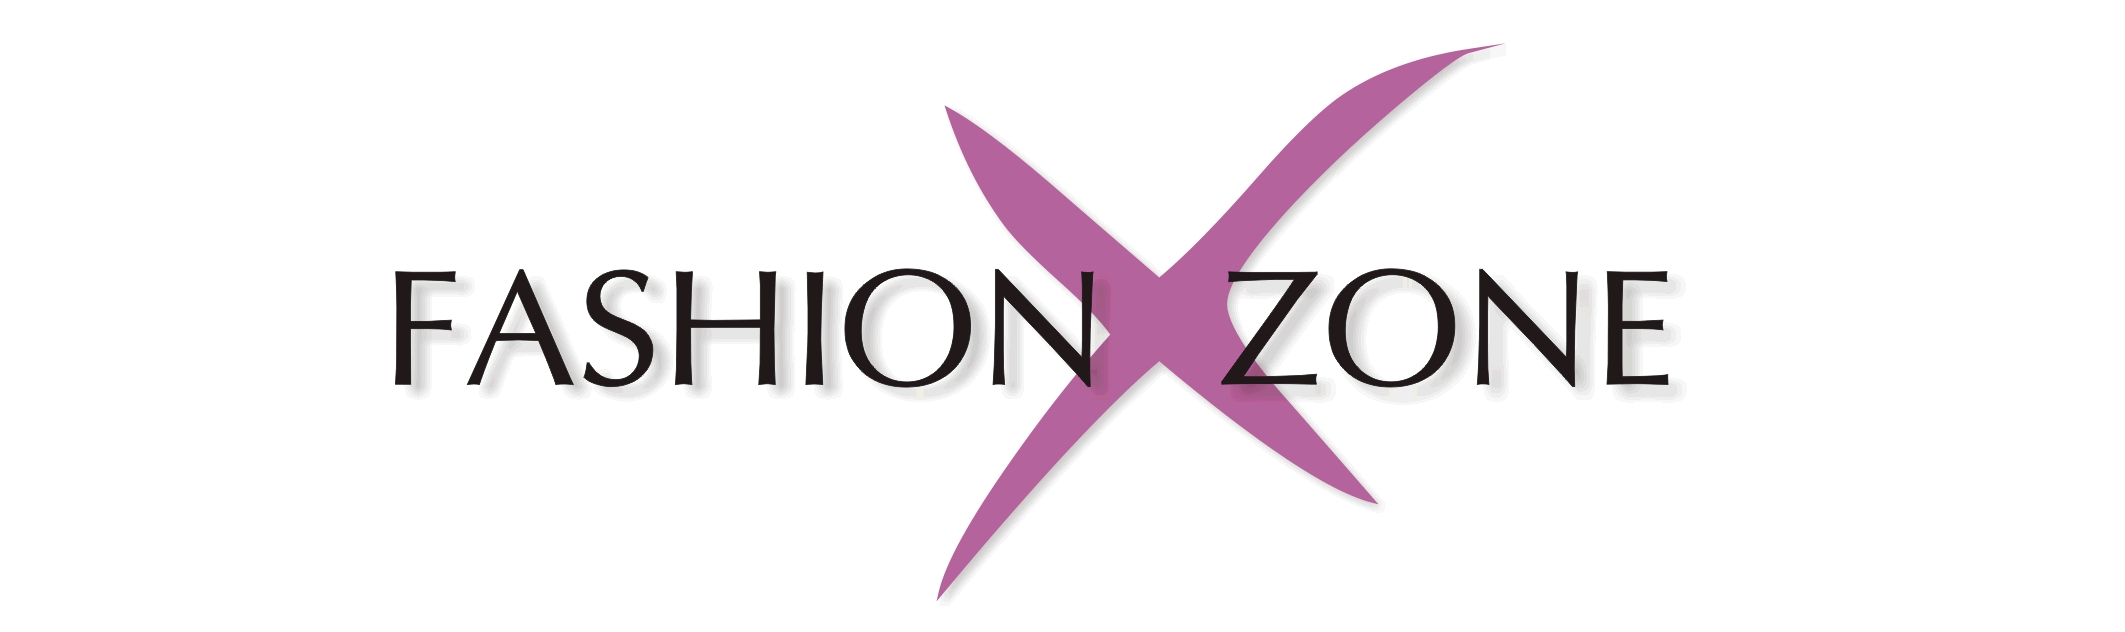 Fashionxzone